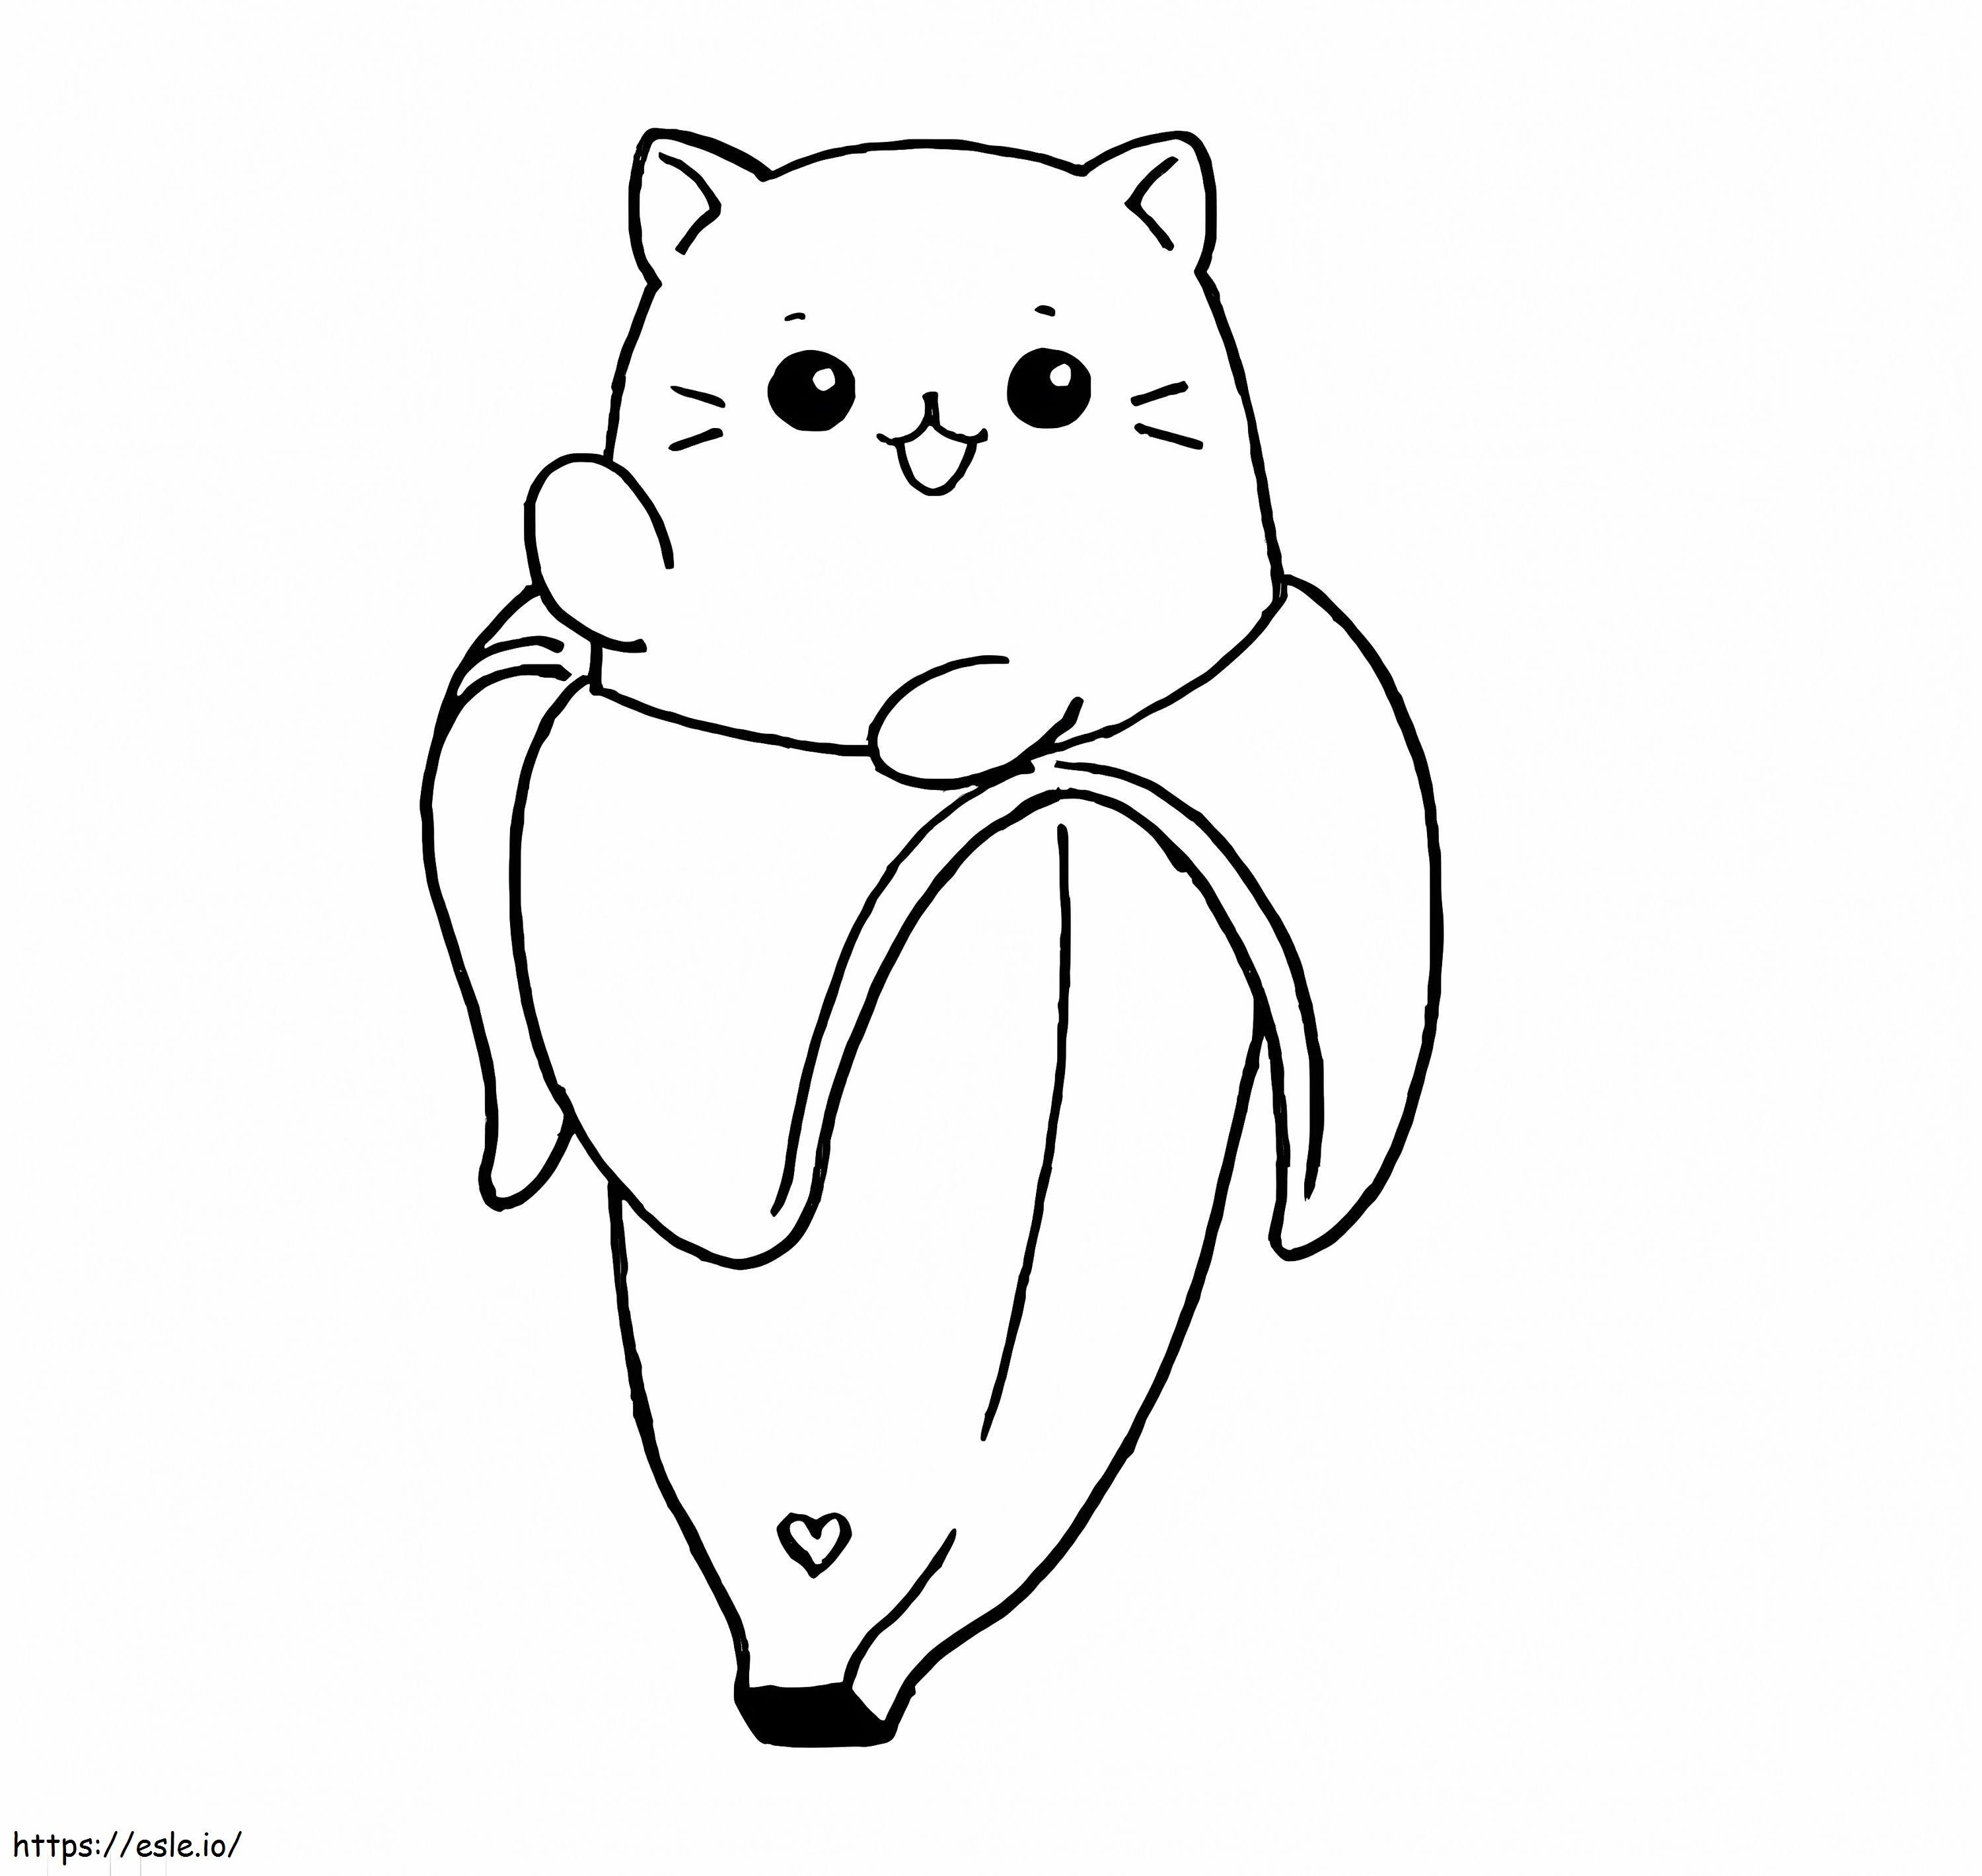 Cute Banana Cat coloring page